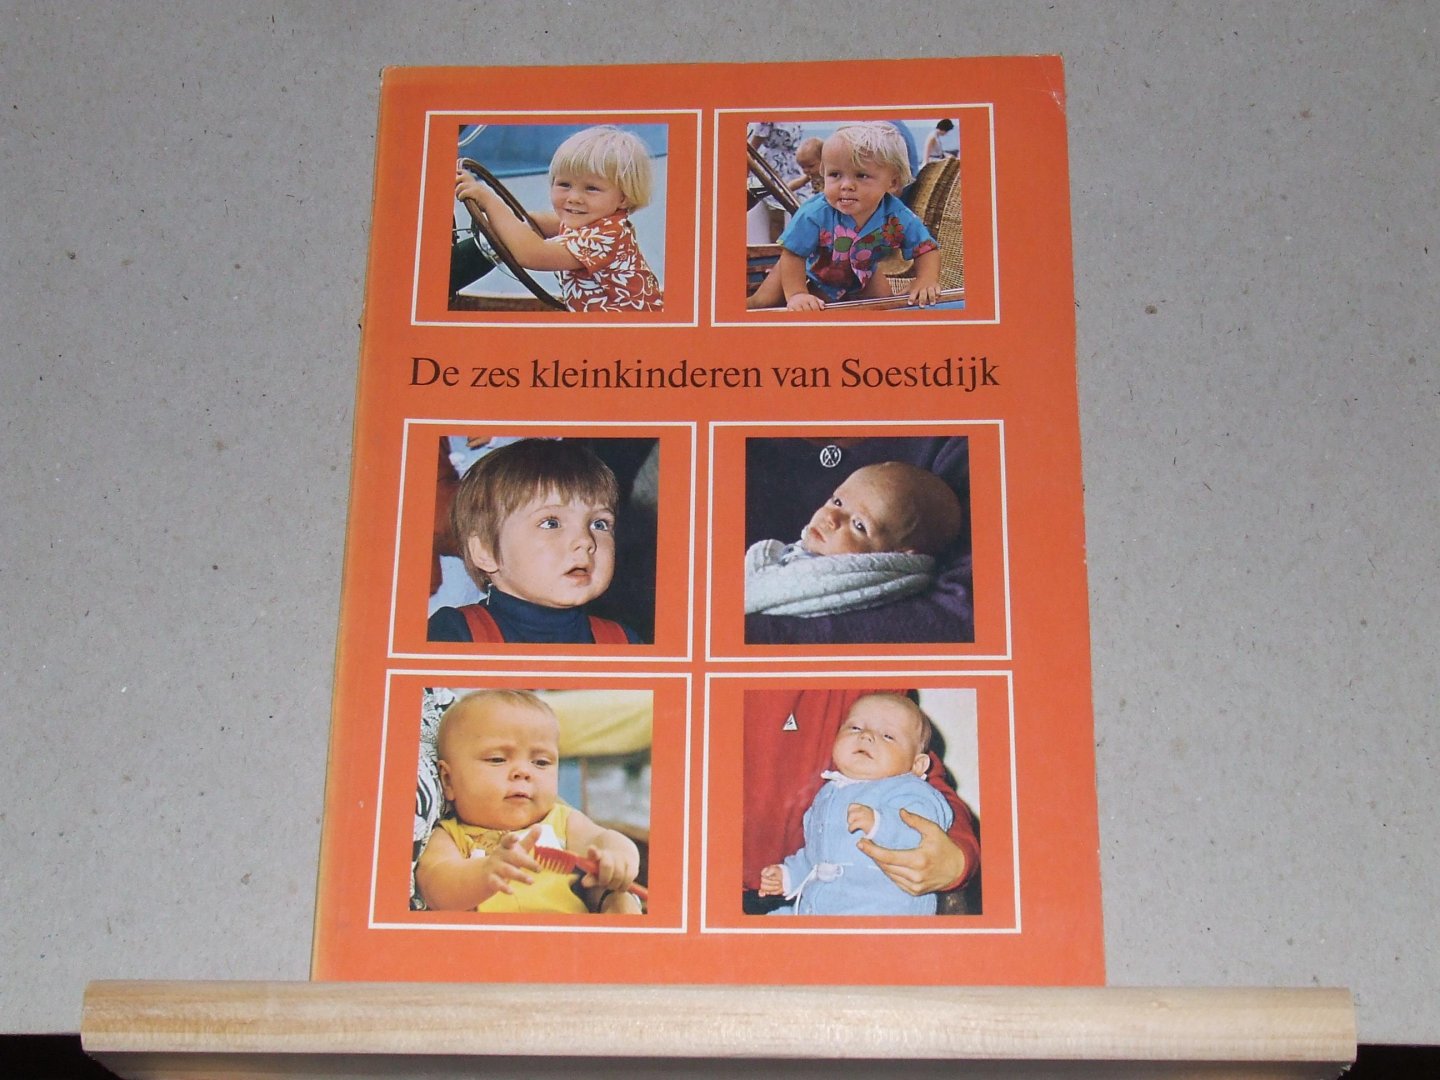 Heijmans, J.A. - De zes kleinkinderen van Soestdijk